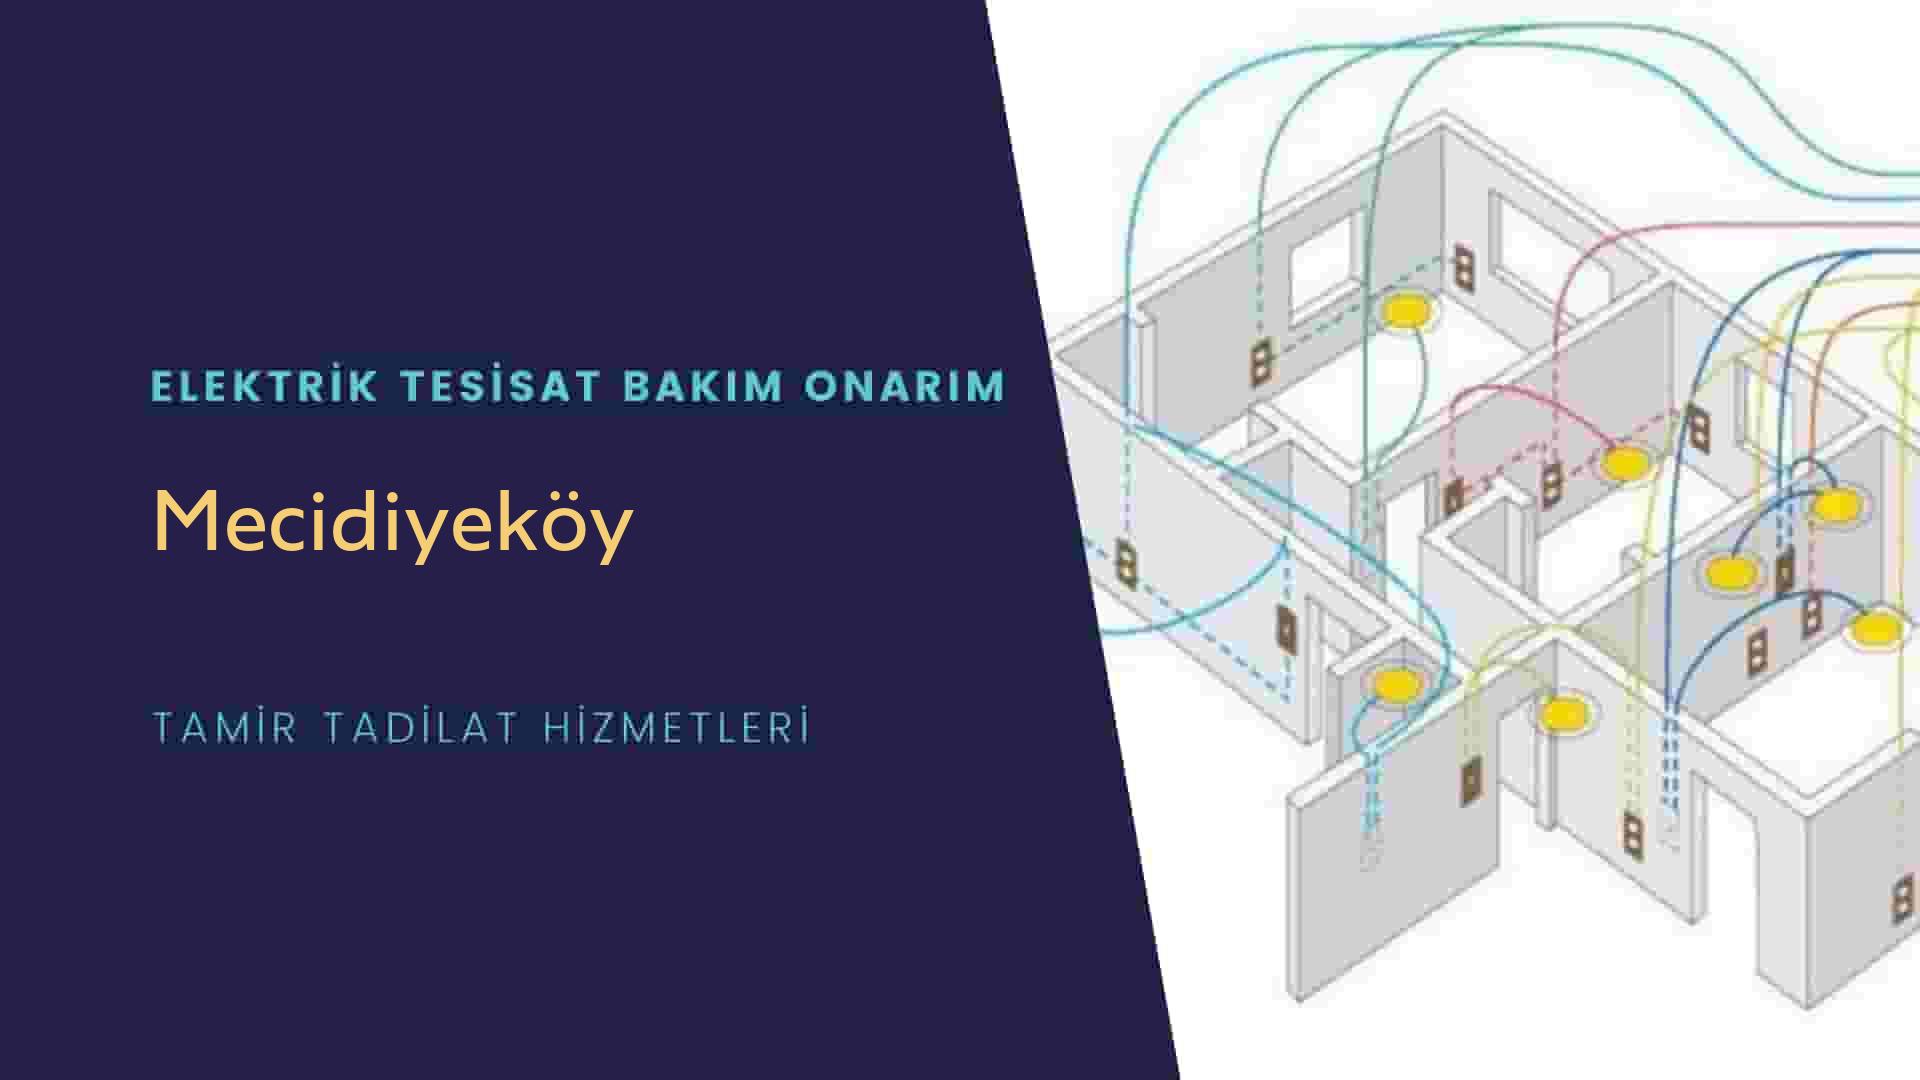 Mecidiyeköy'de elektrik tesisatı ustalarımı arıyorsunuz doğru adrestenizi Mecidiyeköy elektrik tesisatı ustalarımız 7/24 sizlere hizmet vermekten mutluluk duyar.